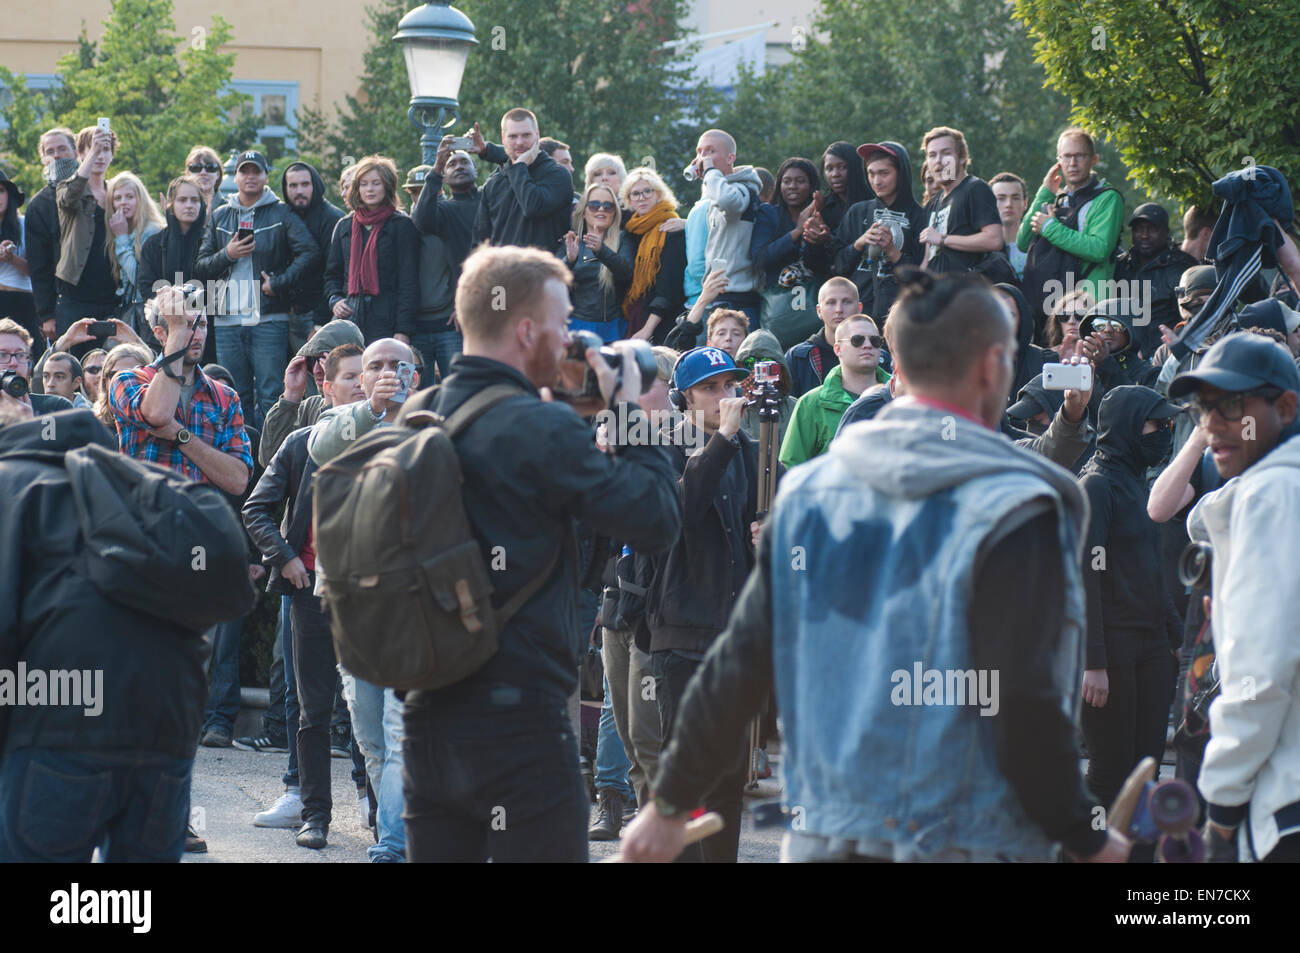 Stoccolma, Svezia, 30 agosto 2014: proteste contro la manifestazione neonazista. Foto Stock